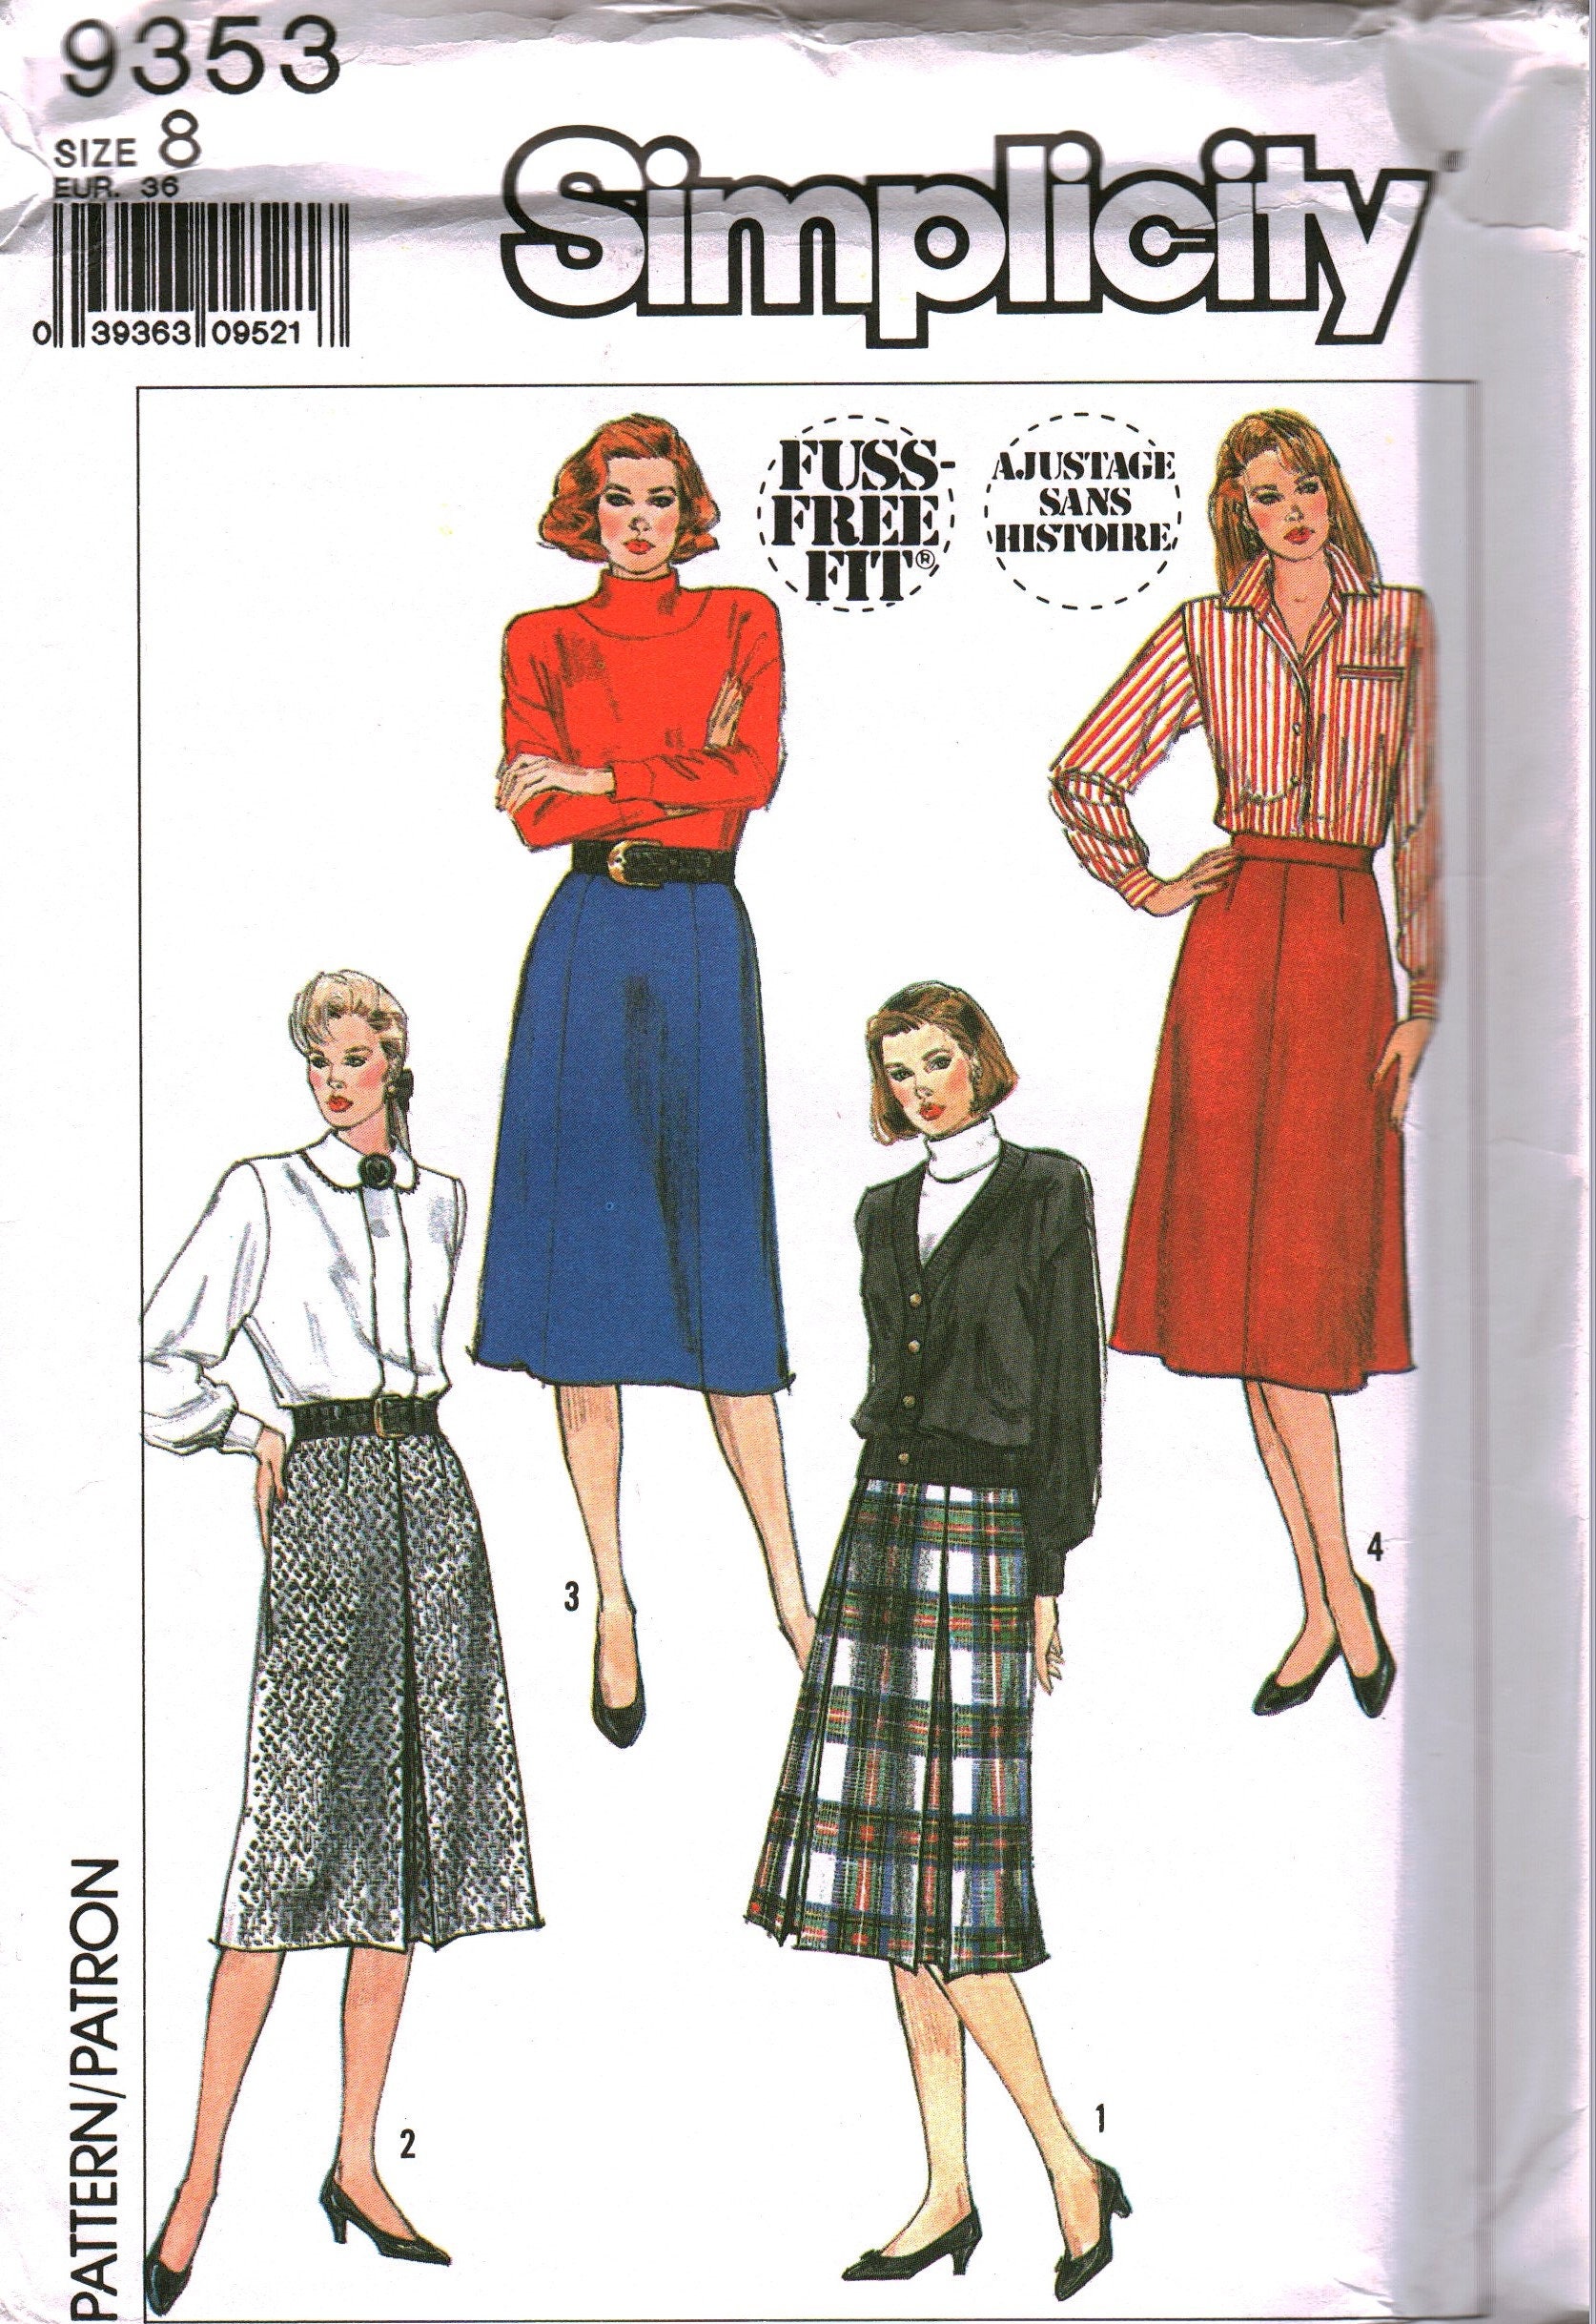 Vintage New Look Sewing Pattern 6462 Misses Jacket Skirt 8-18 uncut oop sew ff